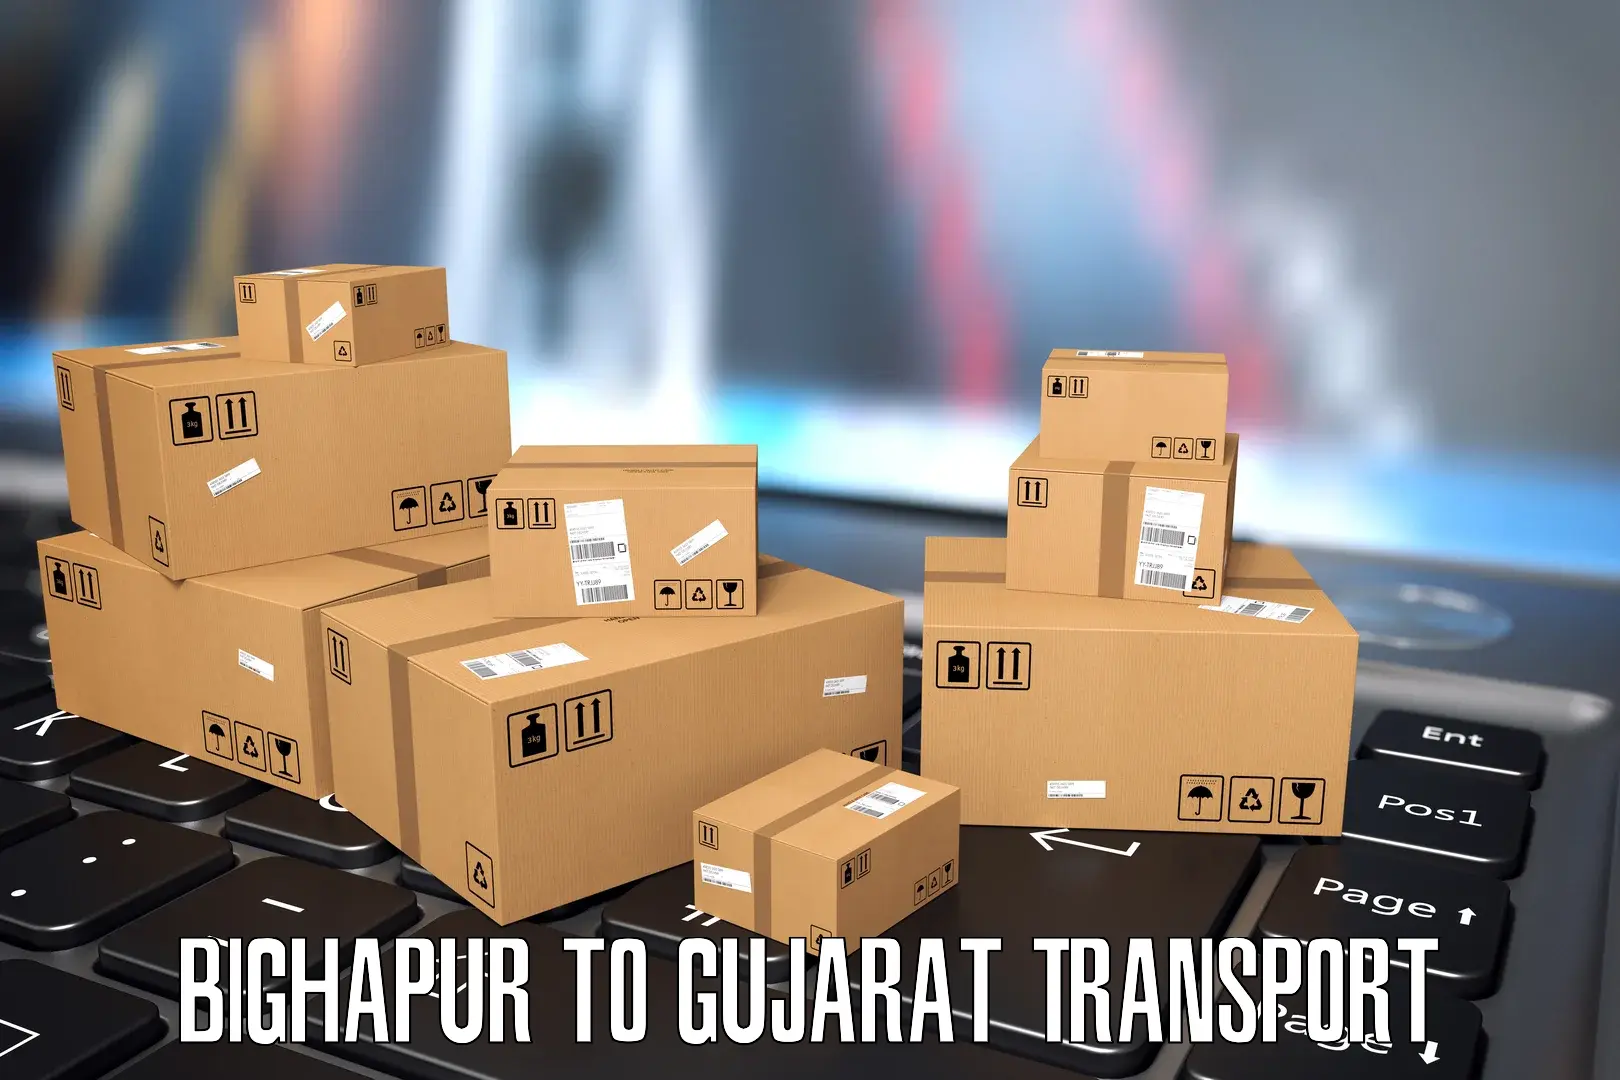 Transportation services Bighapur to Mahesana